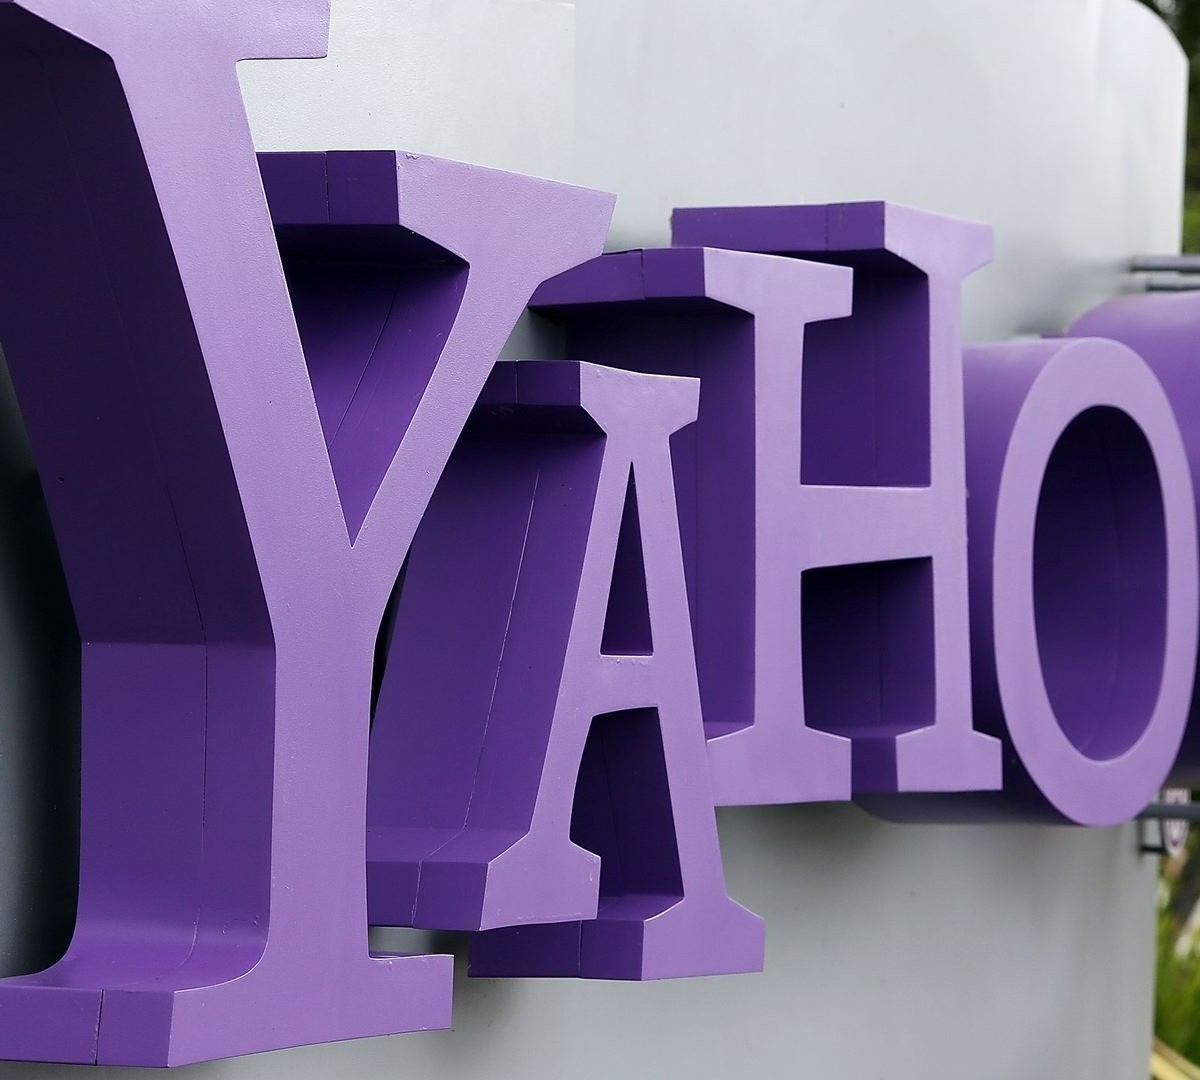 Site 'Yahoo Respostas' chega ao fim depois de 16 anos